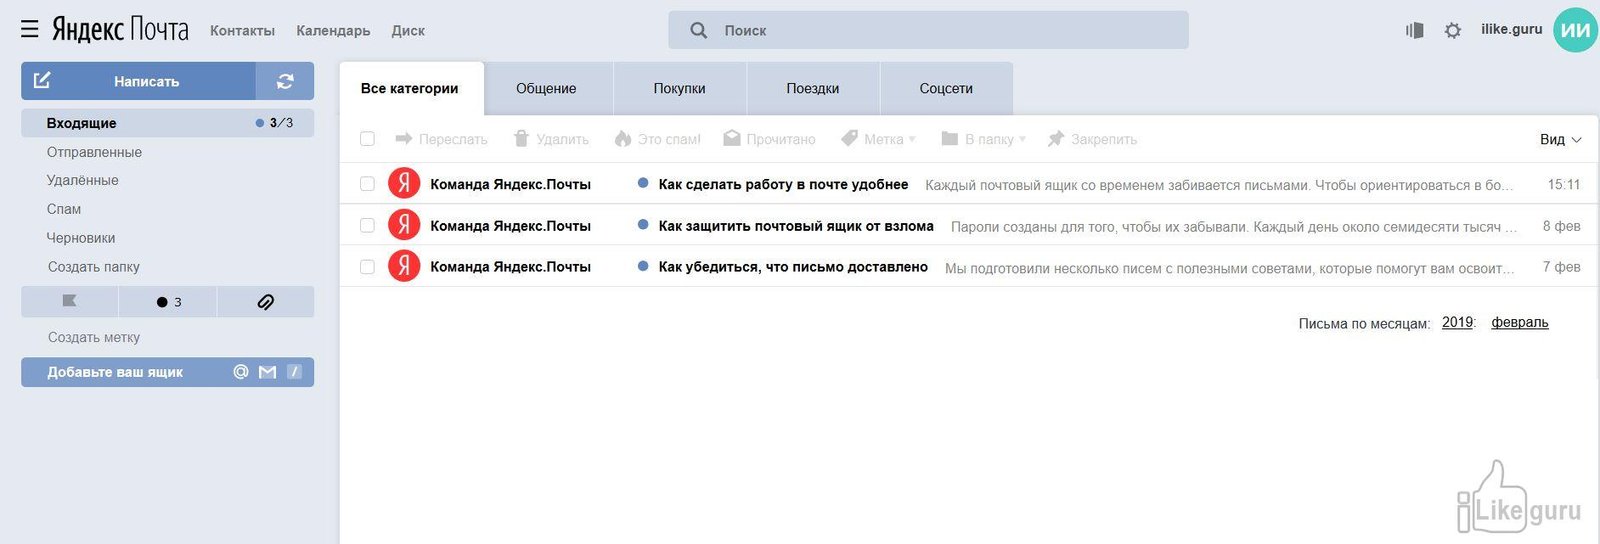 Как пишется Яндекс почта